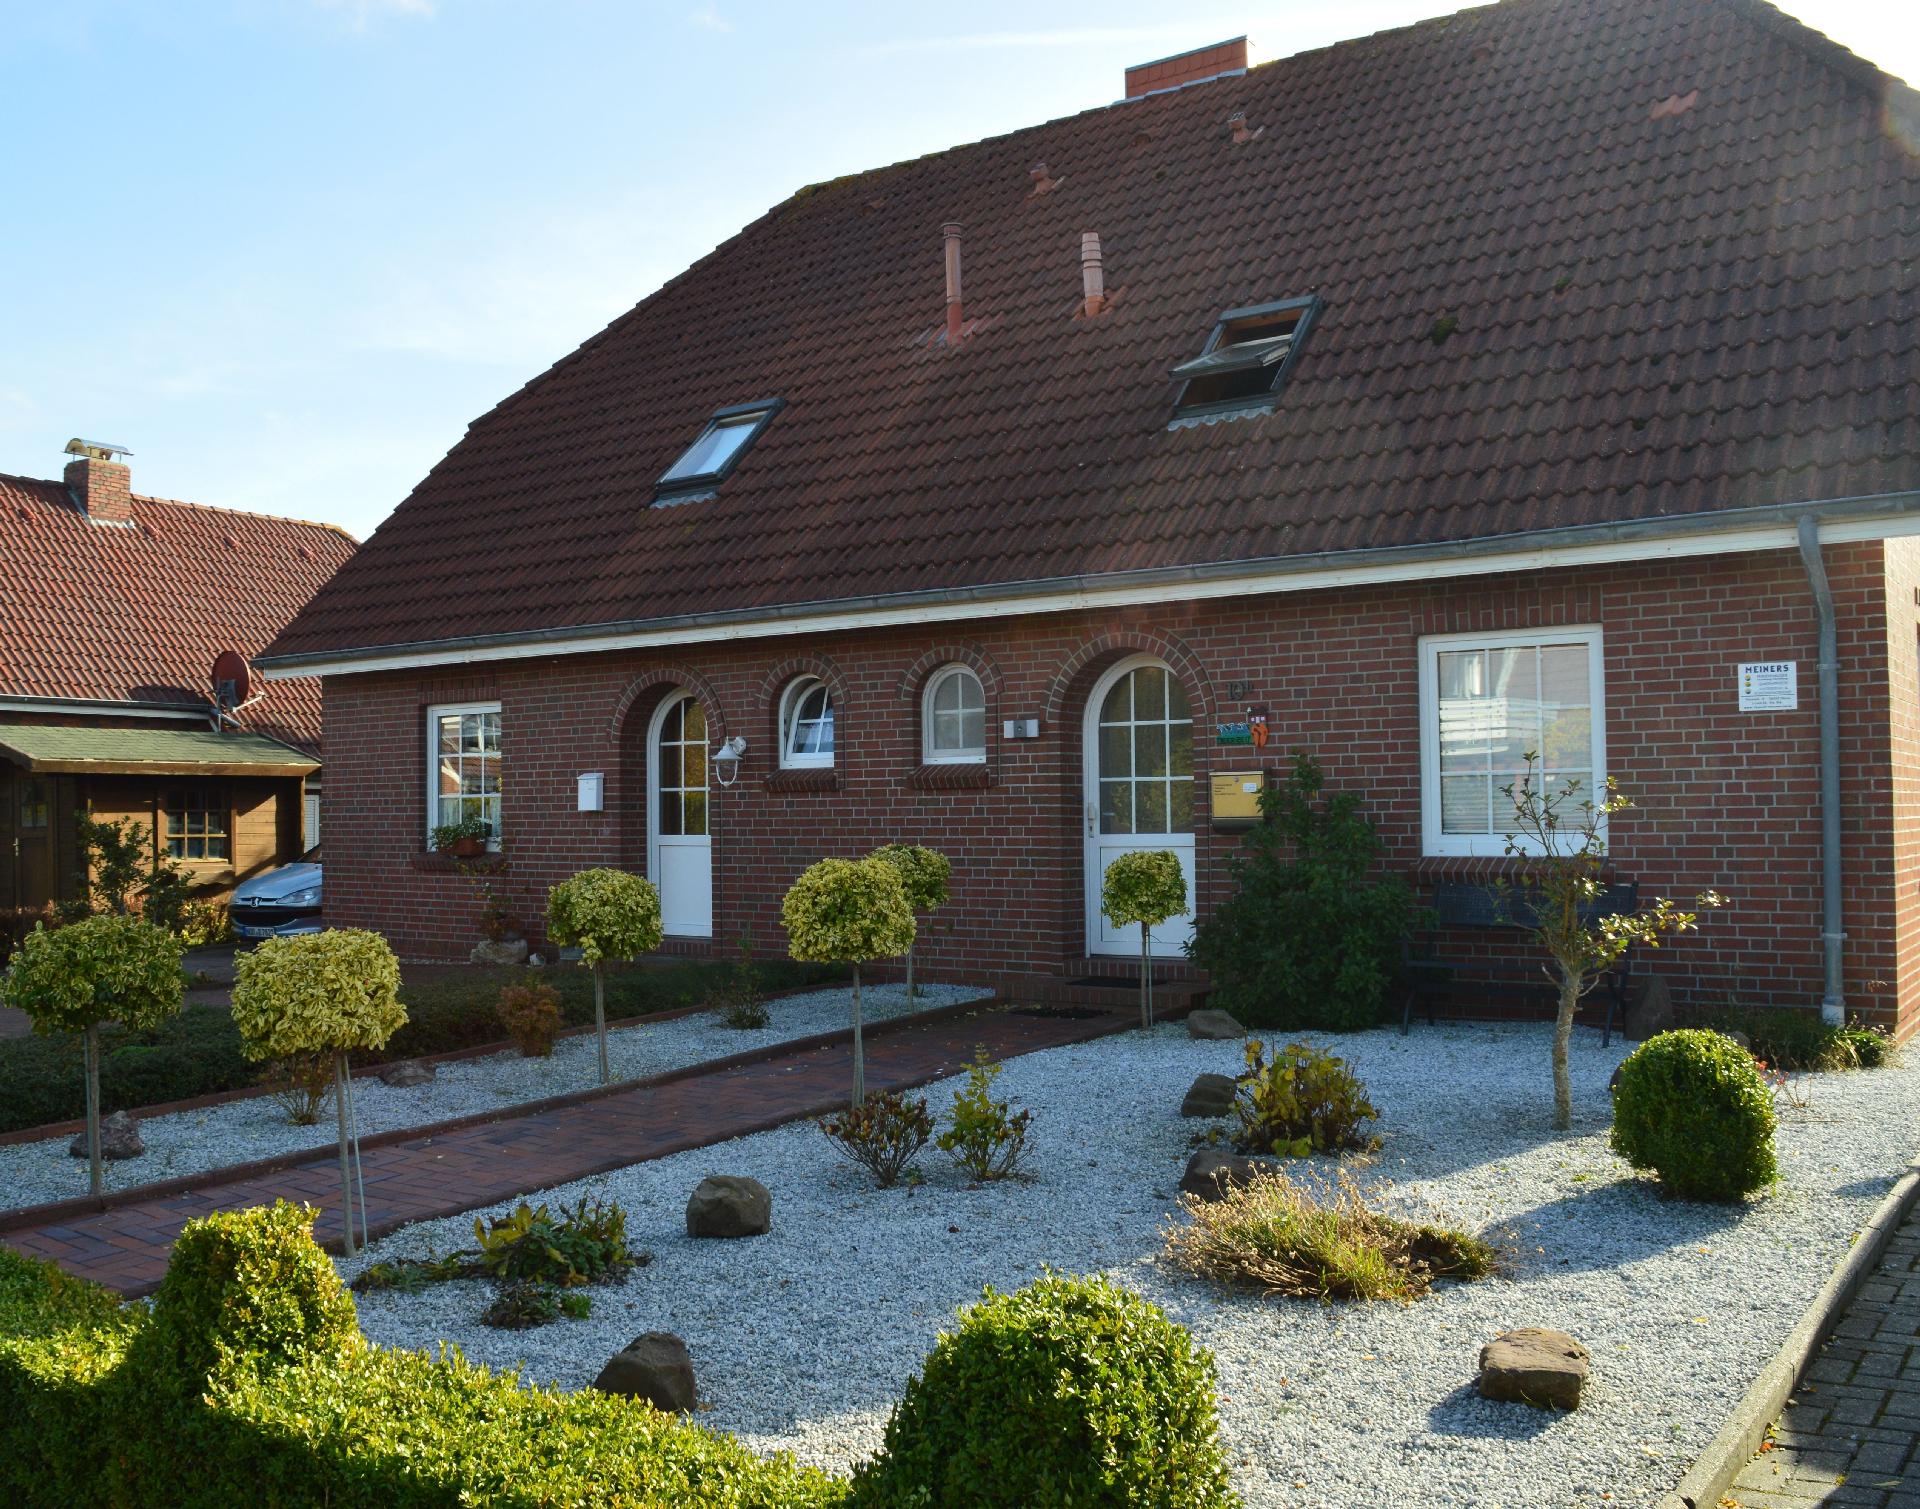  Ferienhaus mit Terrasse, Garten und Fahrradnutzun Ferienhaus in Ostfriesland